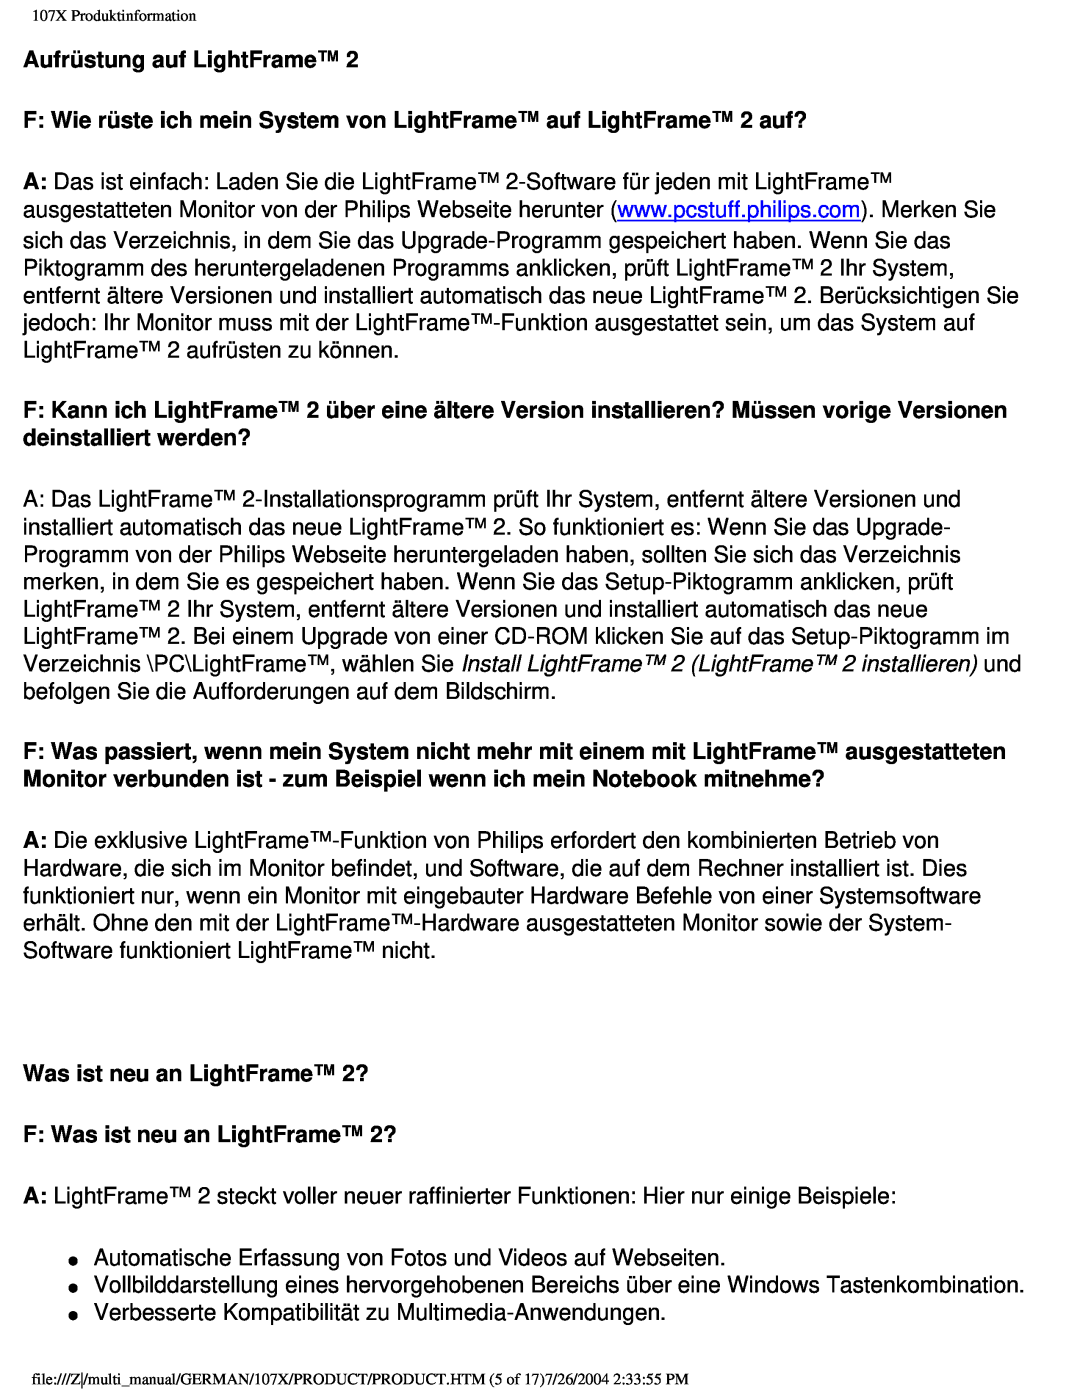 Philips 107X2 user manual Aufrüstung auf LightFrame, F Wie rüste ich mein System von LightFrame auf LightFrame 2 auf? 